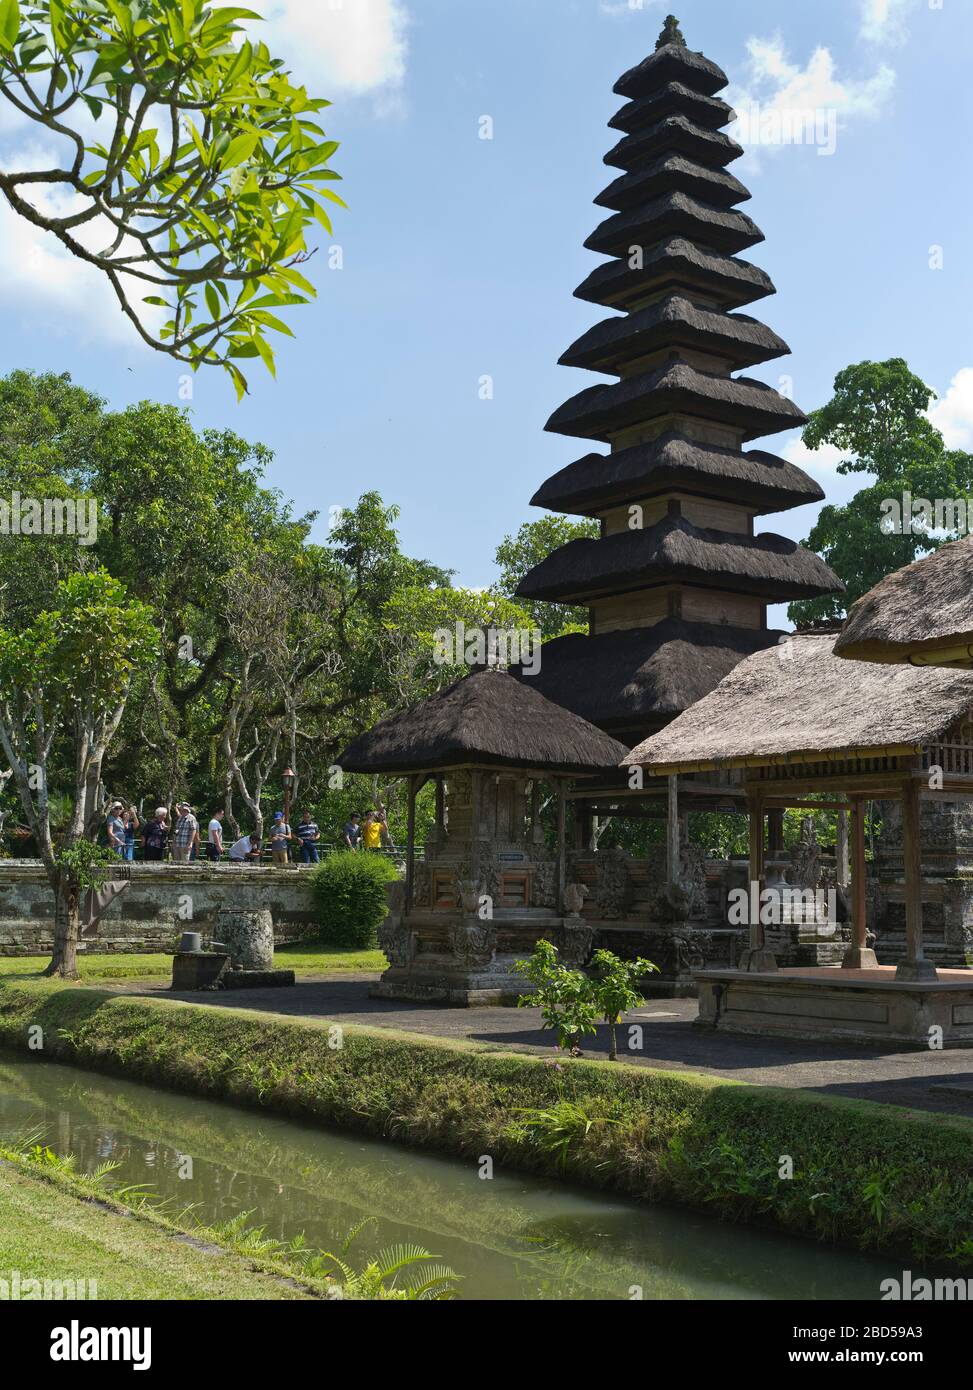 dh Pura Taman Ayun Königlicher Tempel BALI INDONESIEN Balinesischer Hindu Mengwi Tempel inneren sanctum pelinggih meru Turm Schrein Türme Schreine Revolver Stockfoto